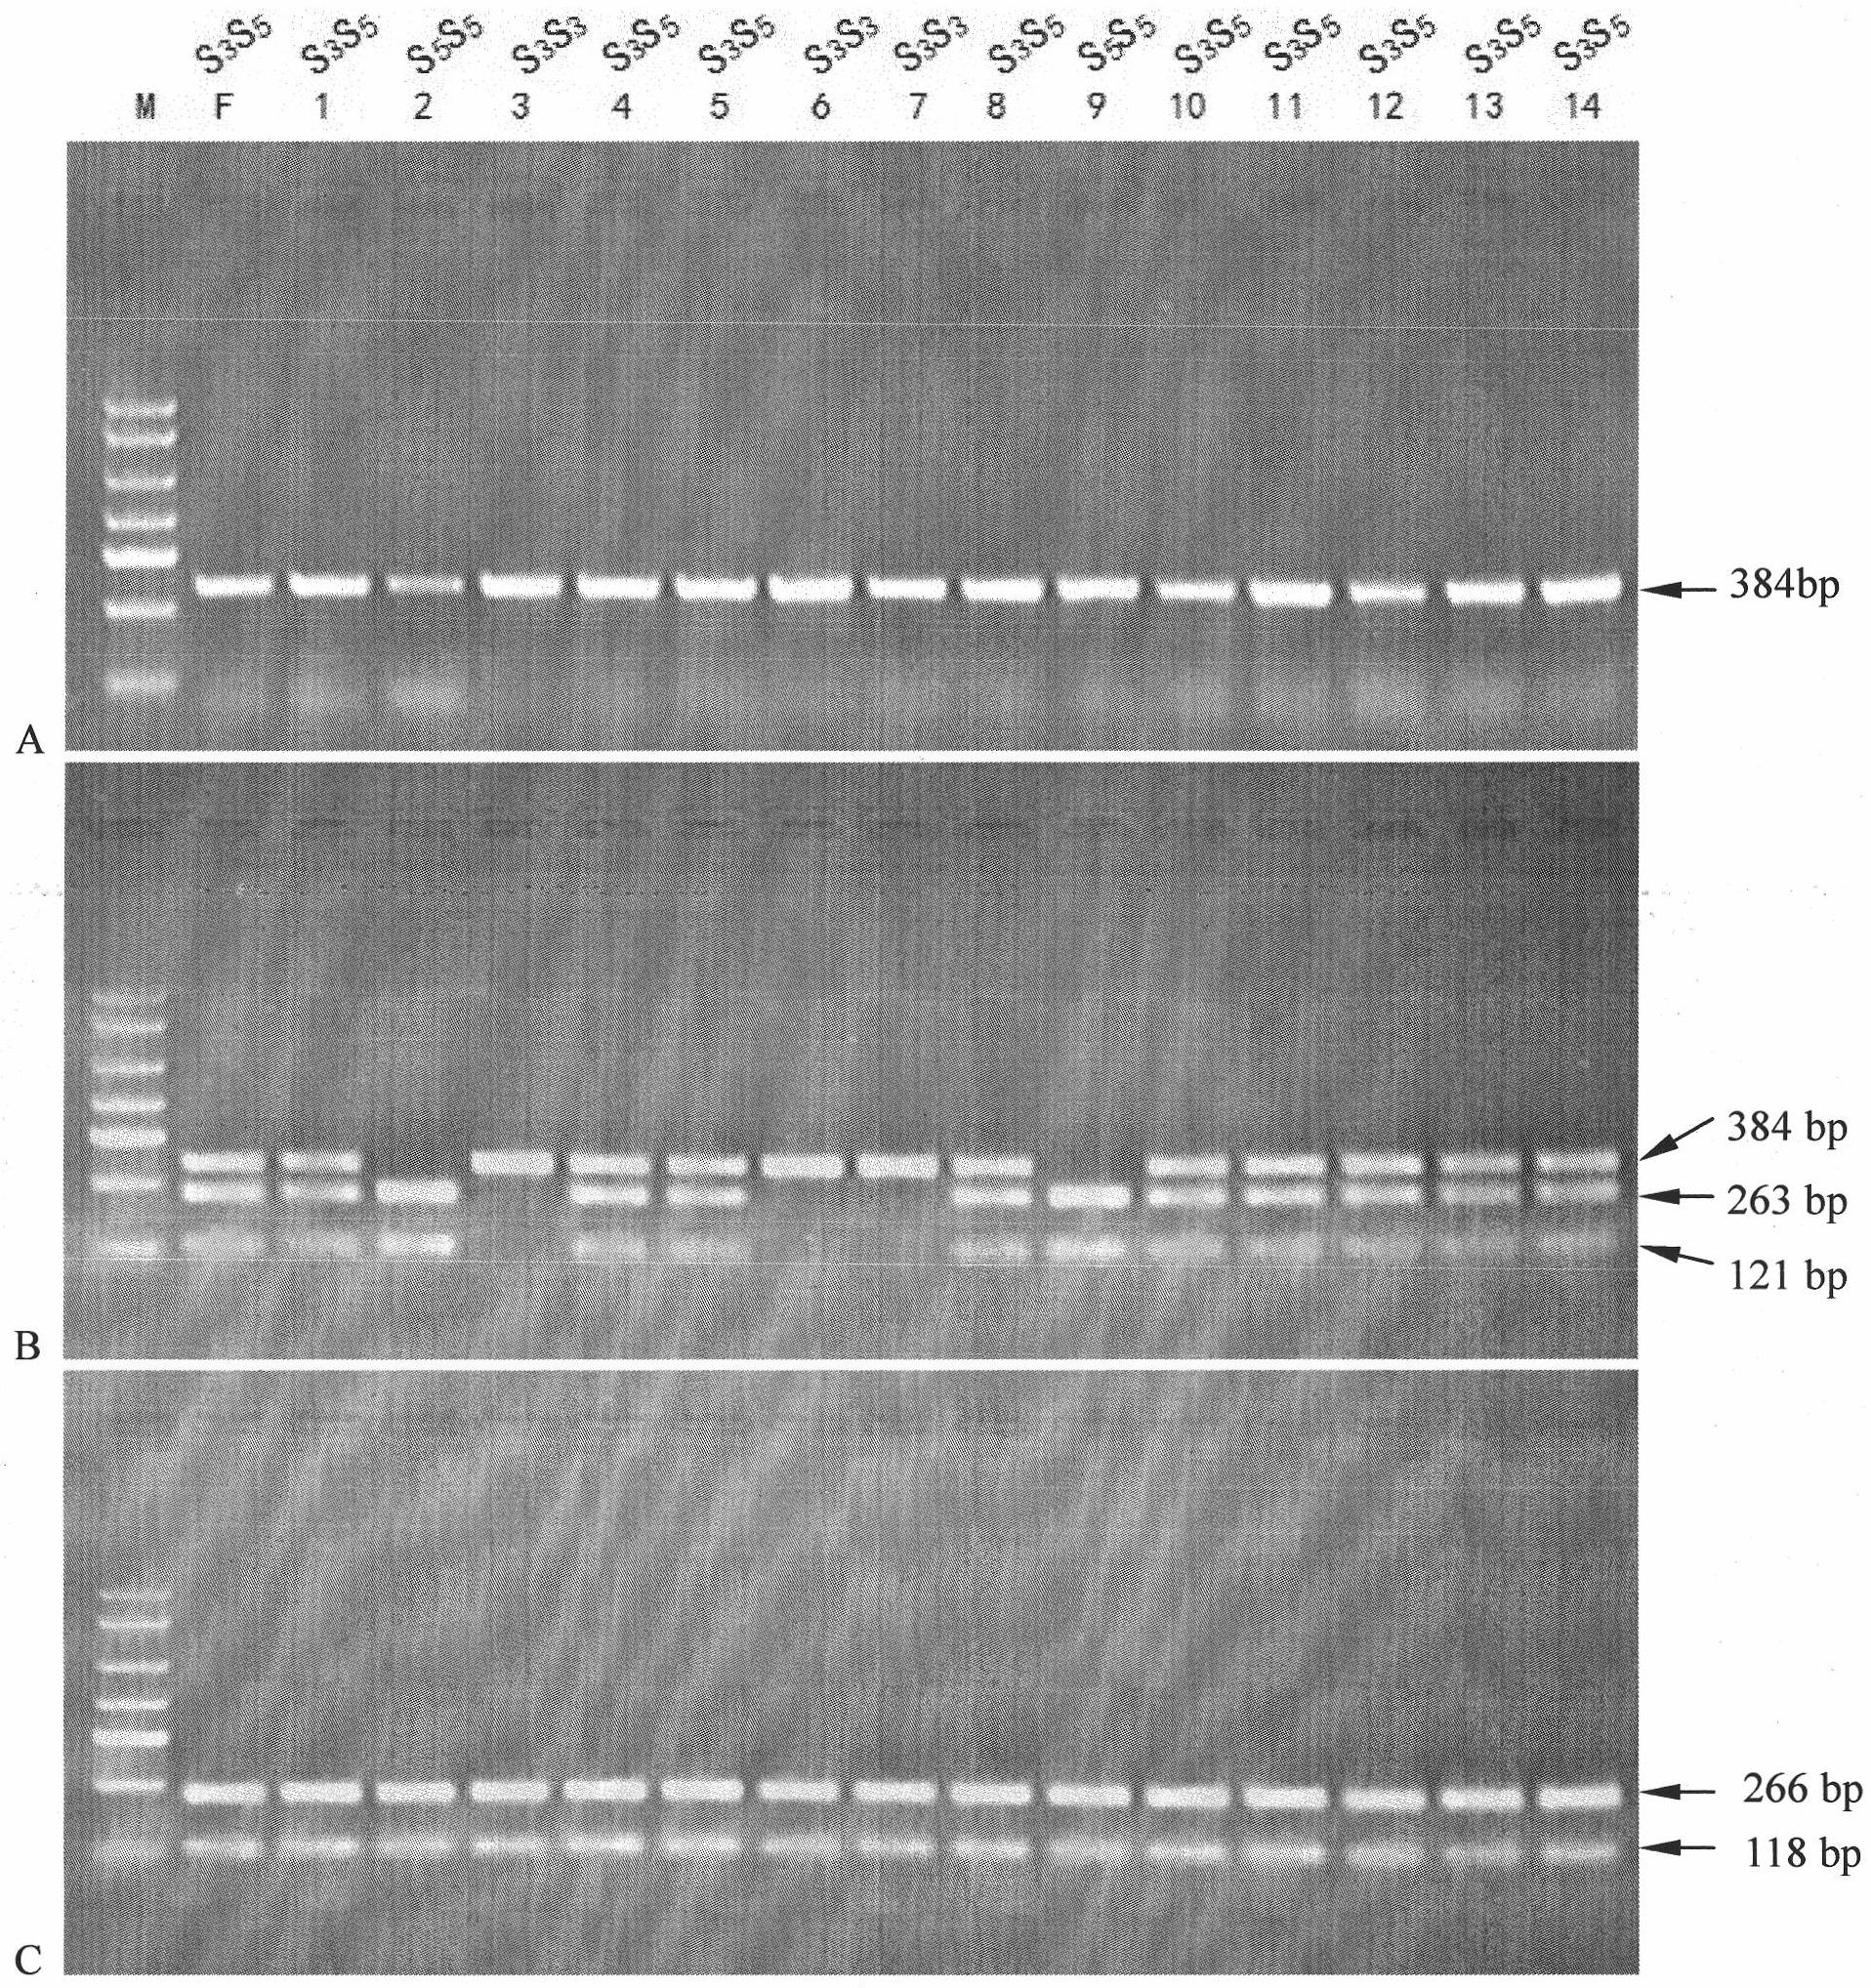 Method for preparing novel germplasm of S gene homozygote by radioactive mutagenesis of pollen